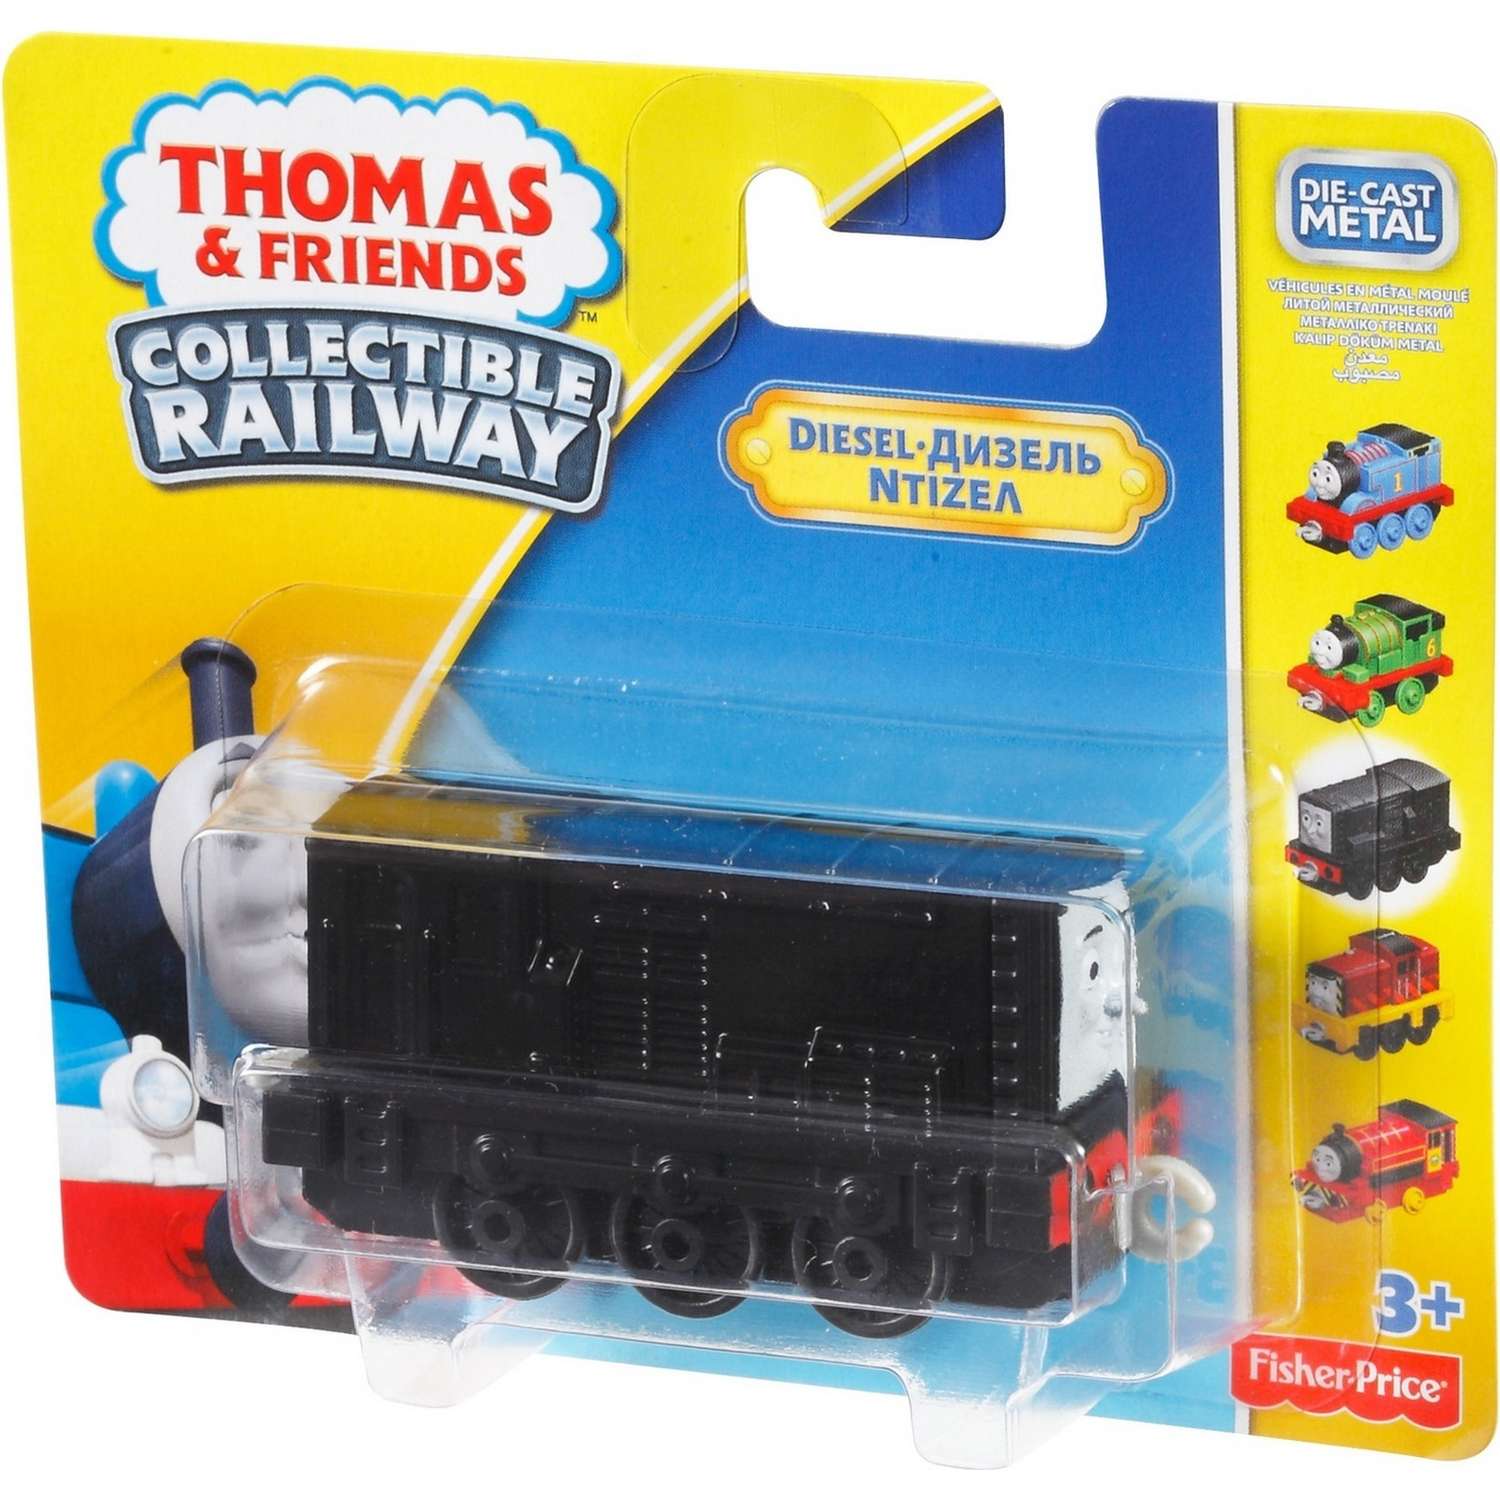 Базовые паровозики Thomas & Friends Томас и друзья в ассортименте BHR64 - фото 34